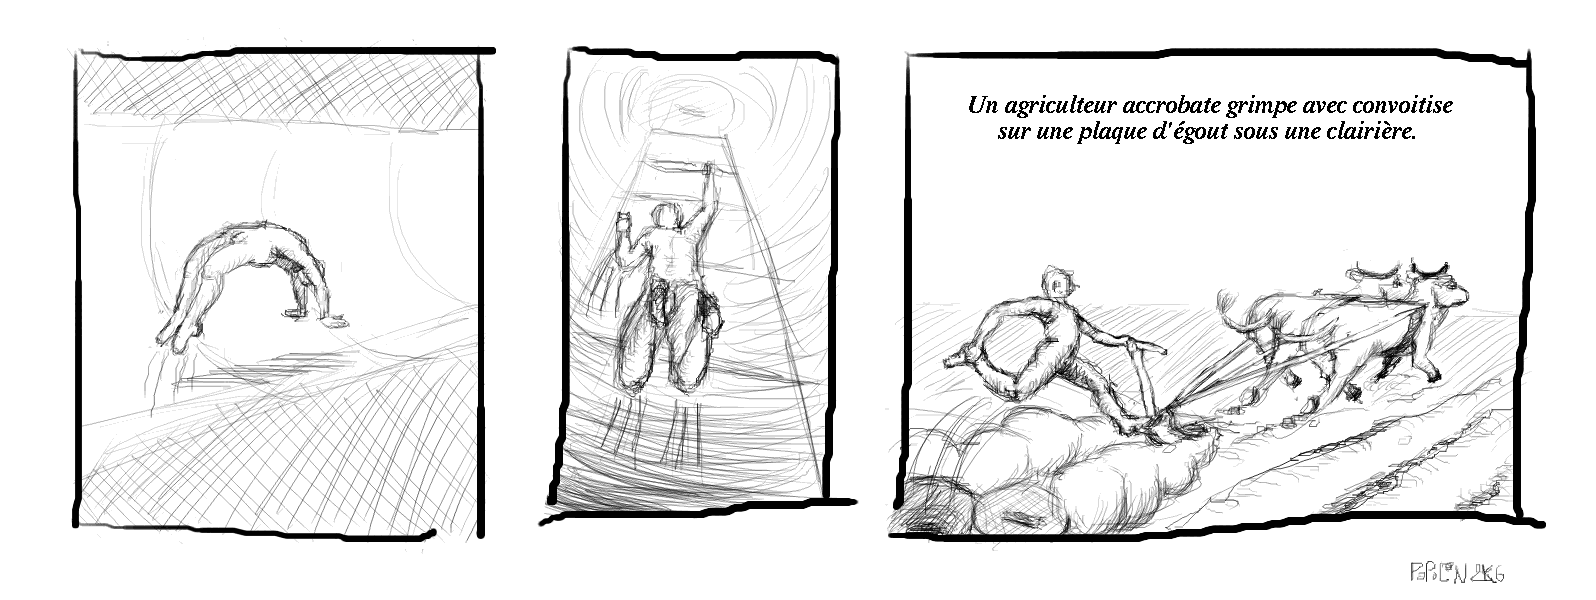 Un agriculteur accrobate grimpe avec convoitise sur une plaque d\'Ã©gout sous une clairiÃ¨re.